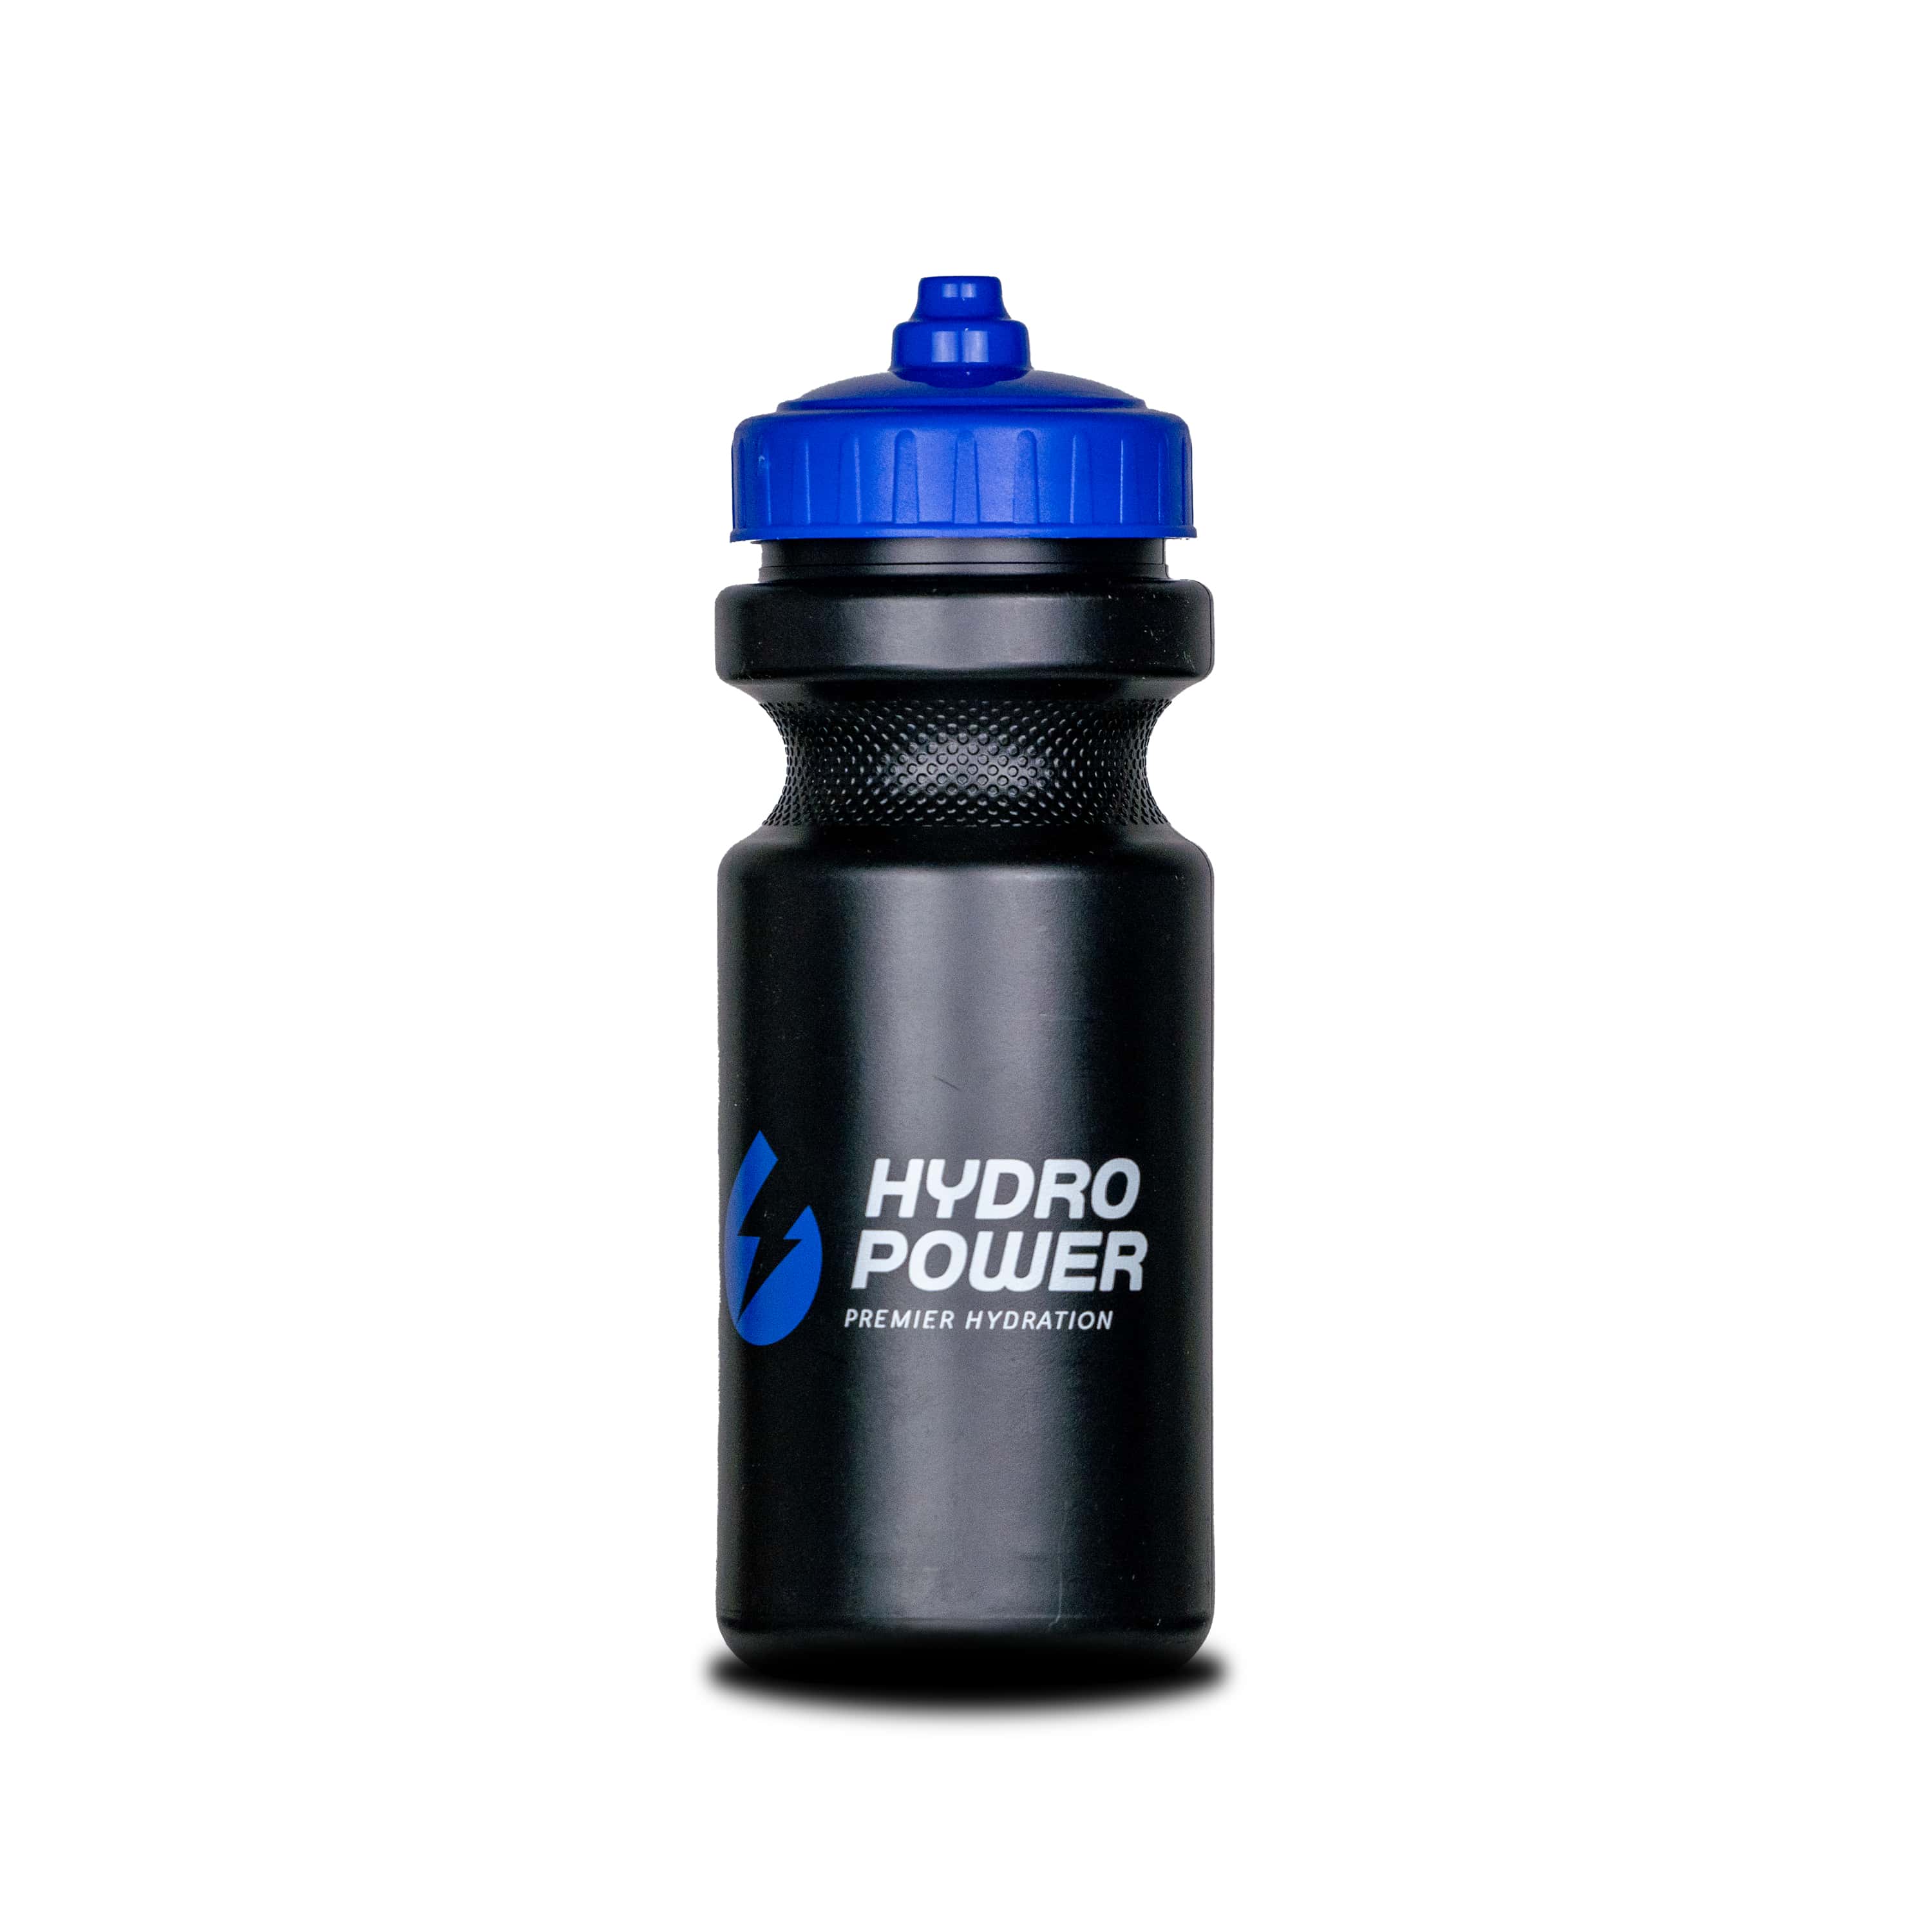 Ultimate Bundle: 3 jars of Hydro Power + 2 Bottles